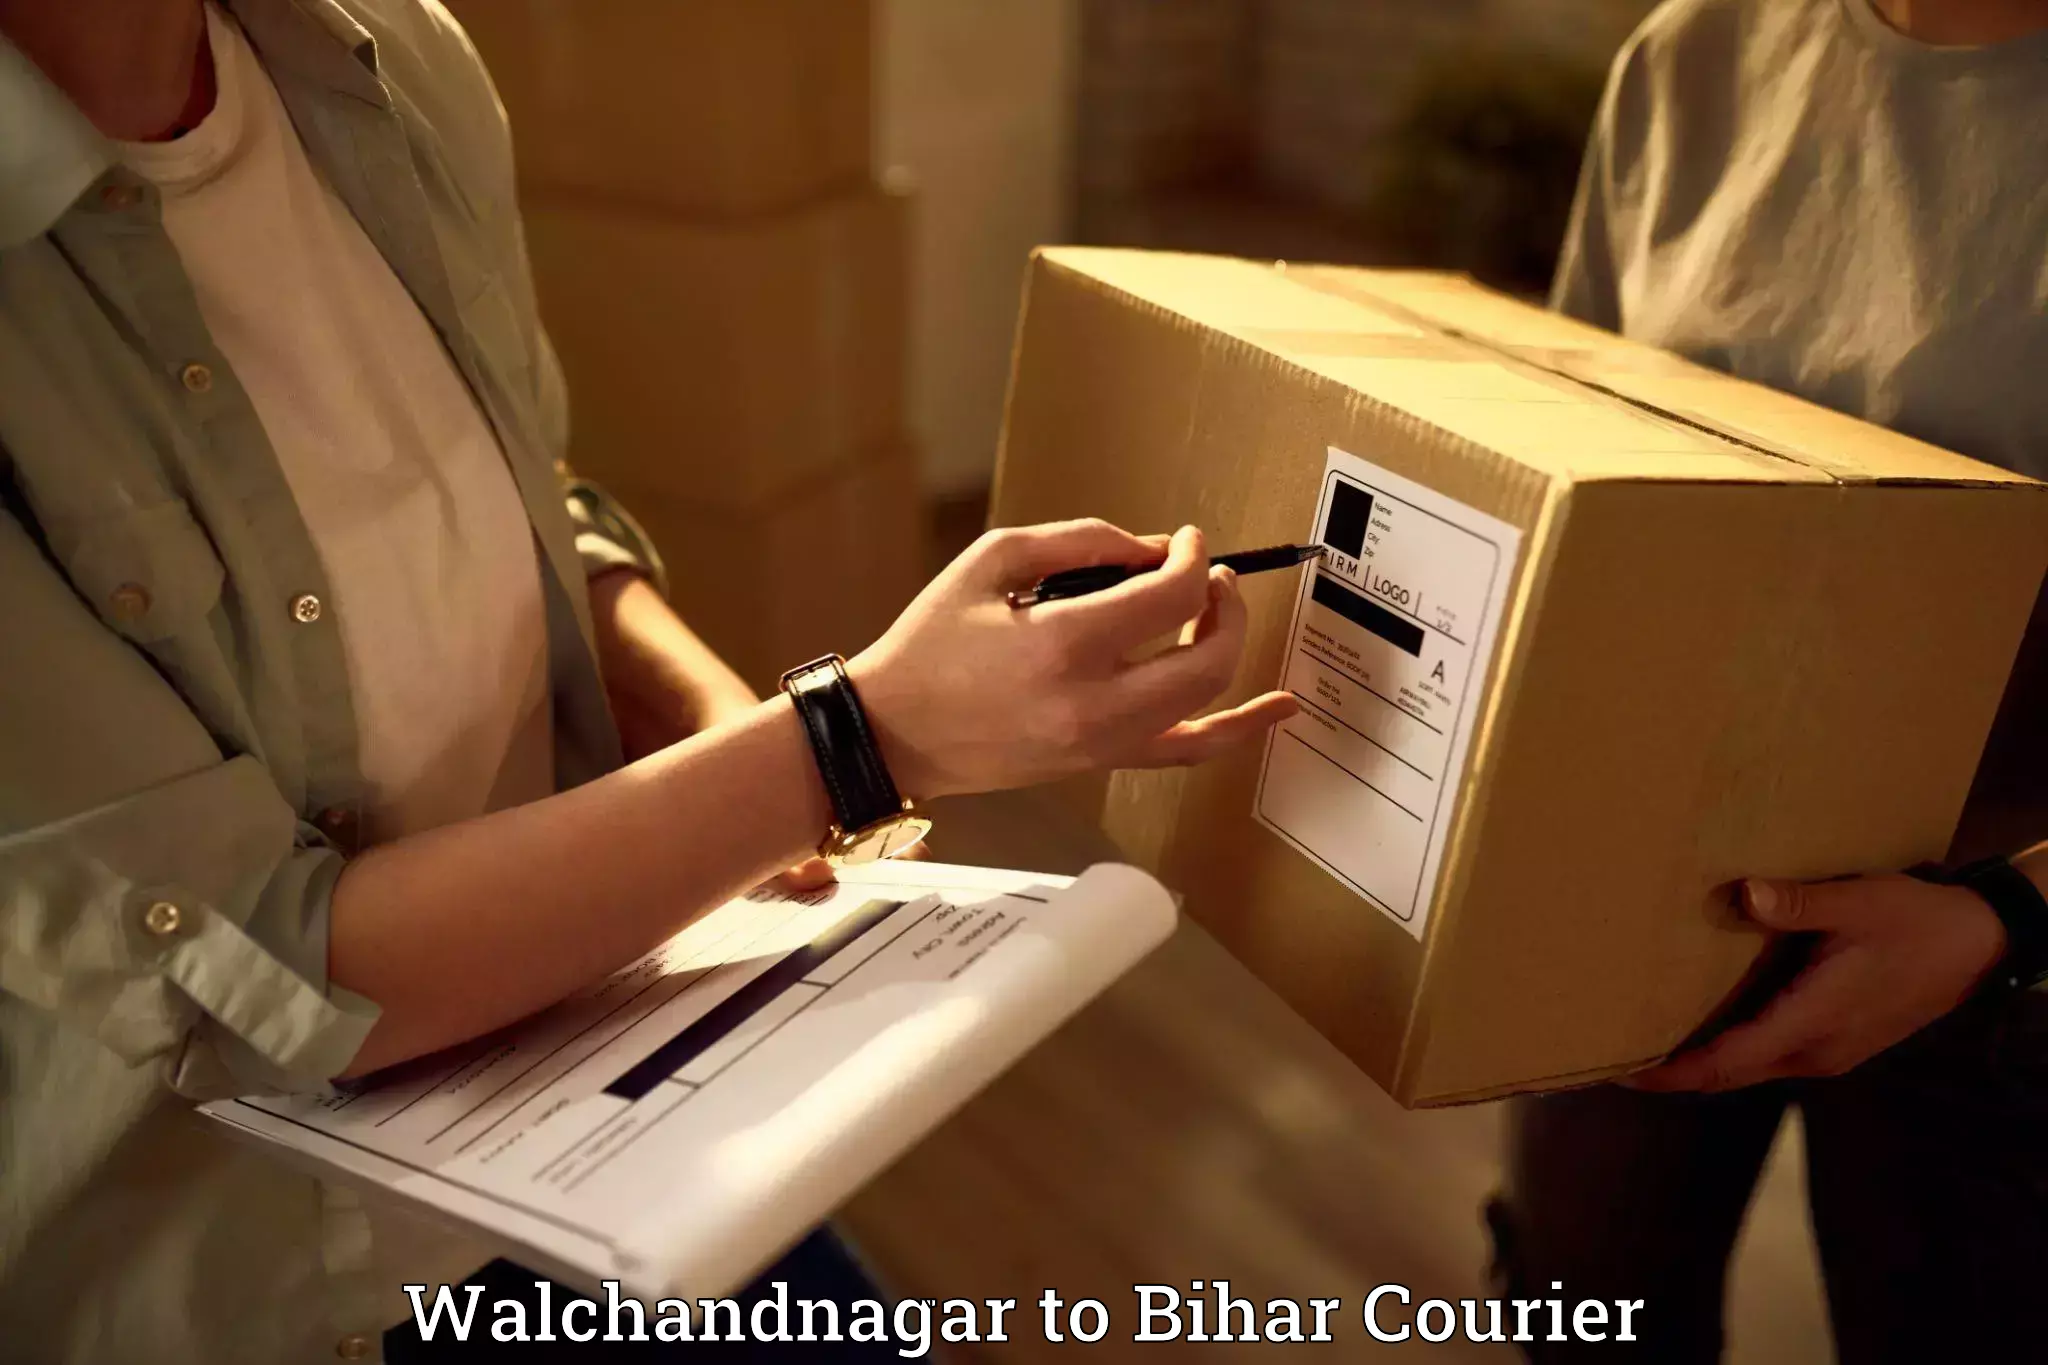 Efficient packing services Walchandnagar to Muzaffarpur